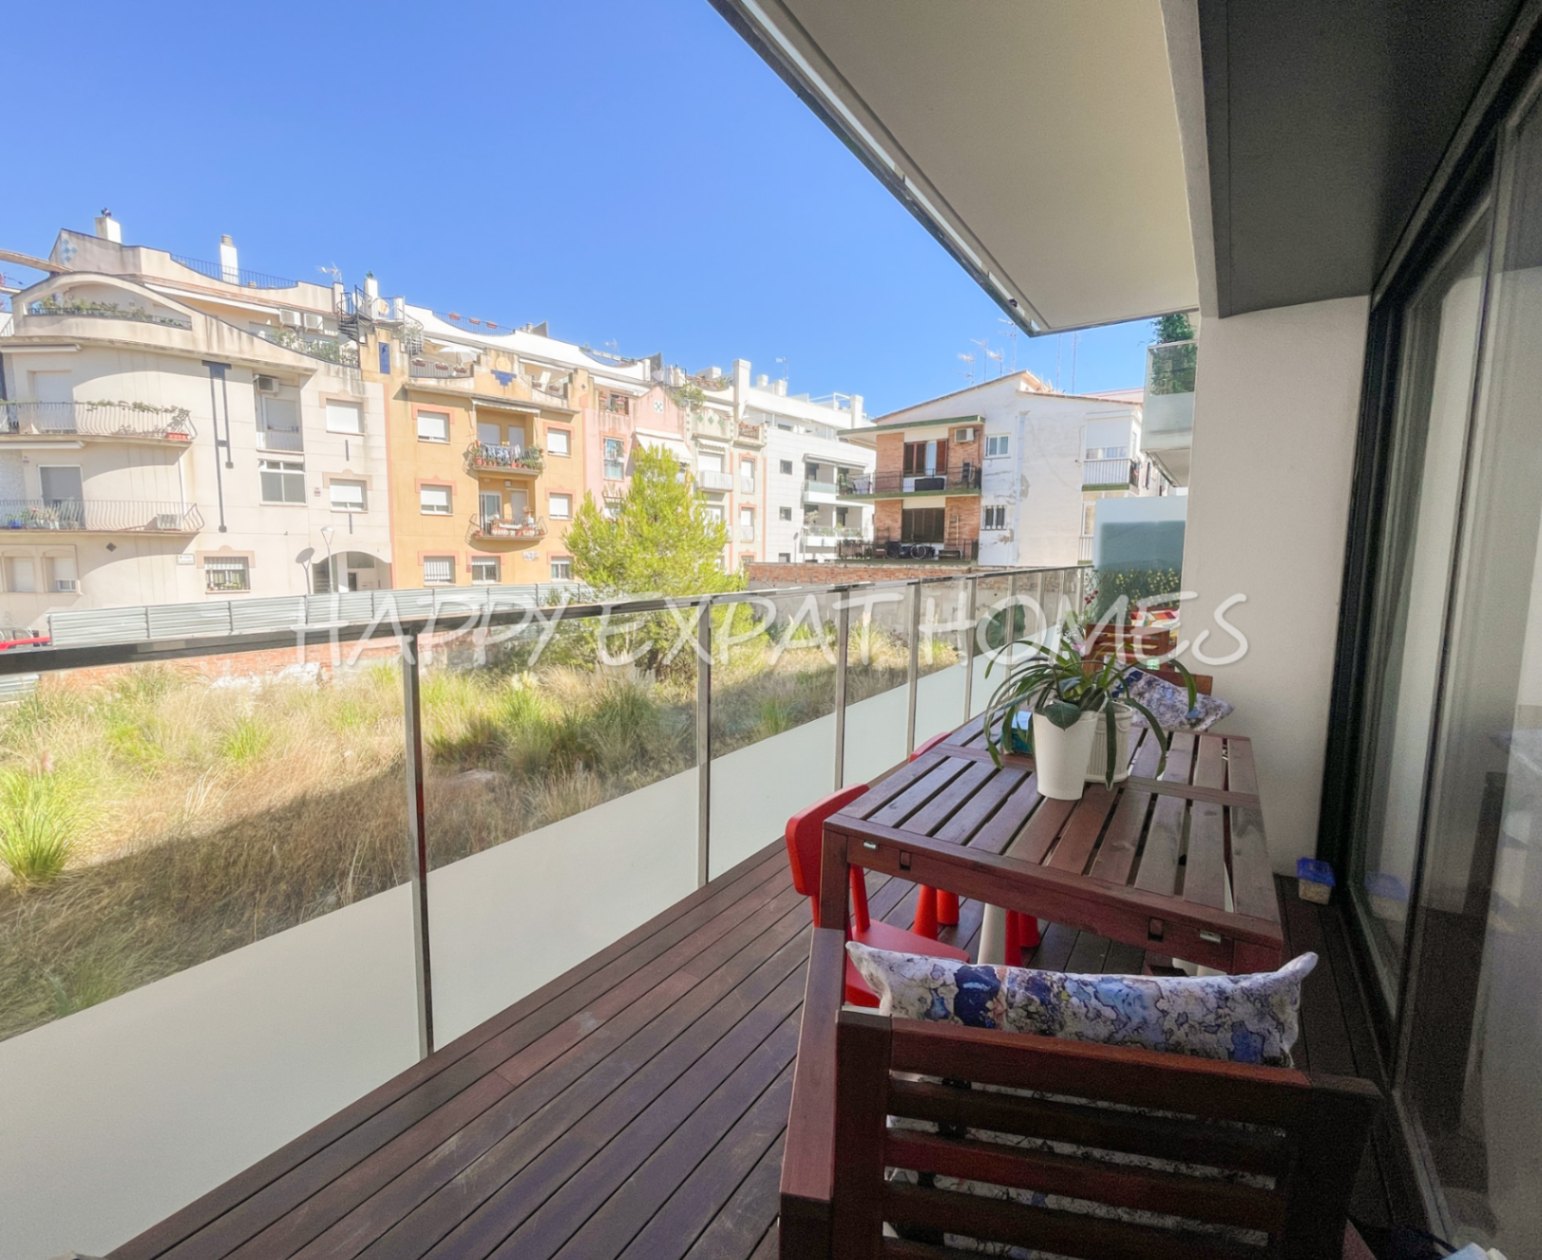 Moderne Wohnung mit Pool und Fitnessraum - Strand von Sitges